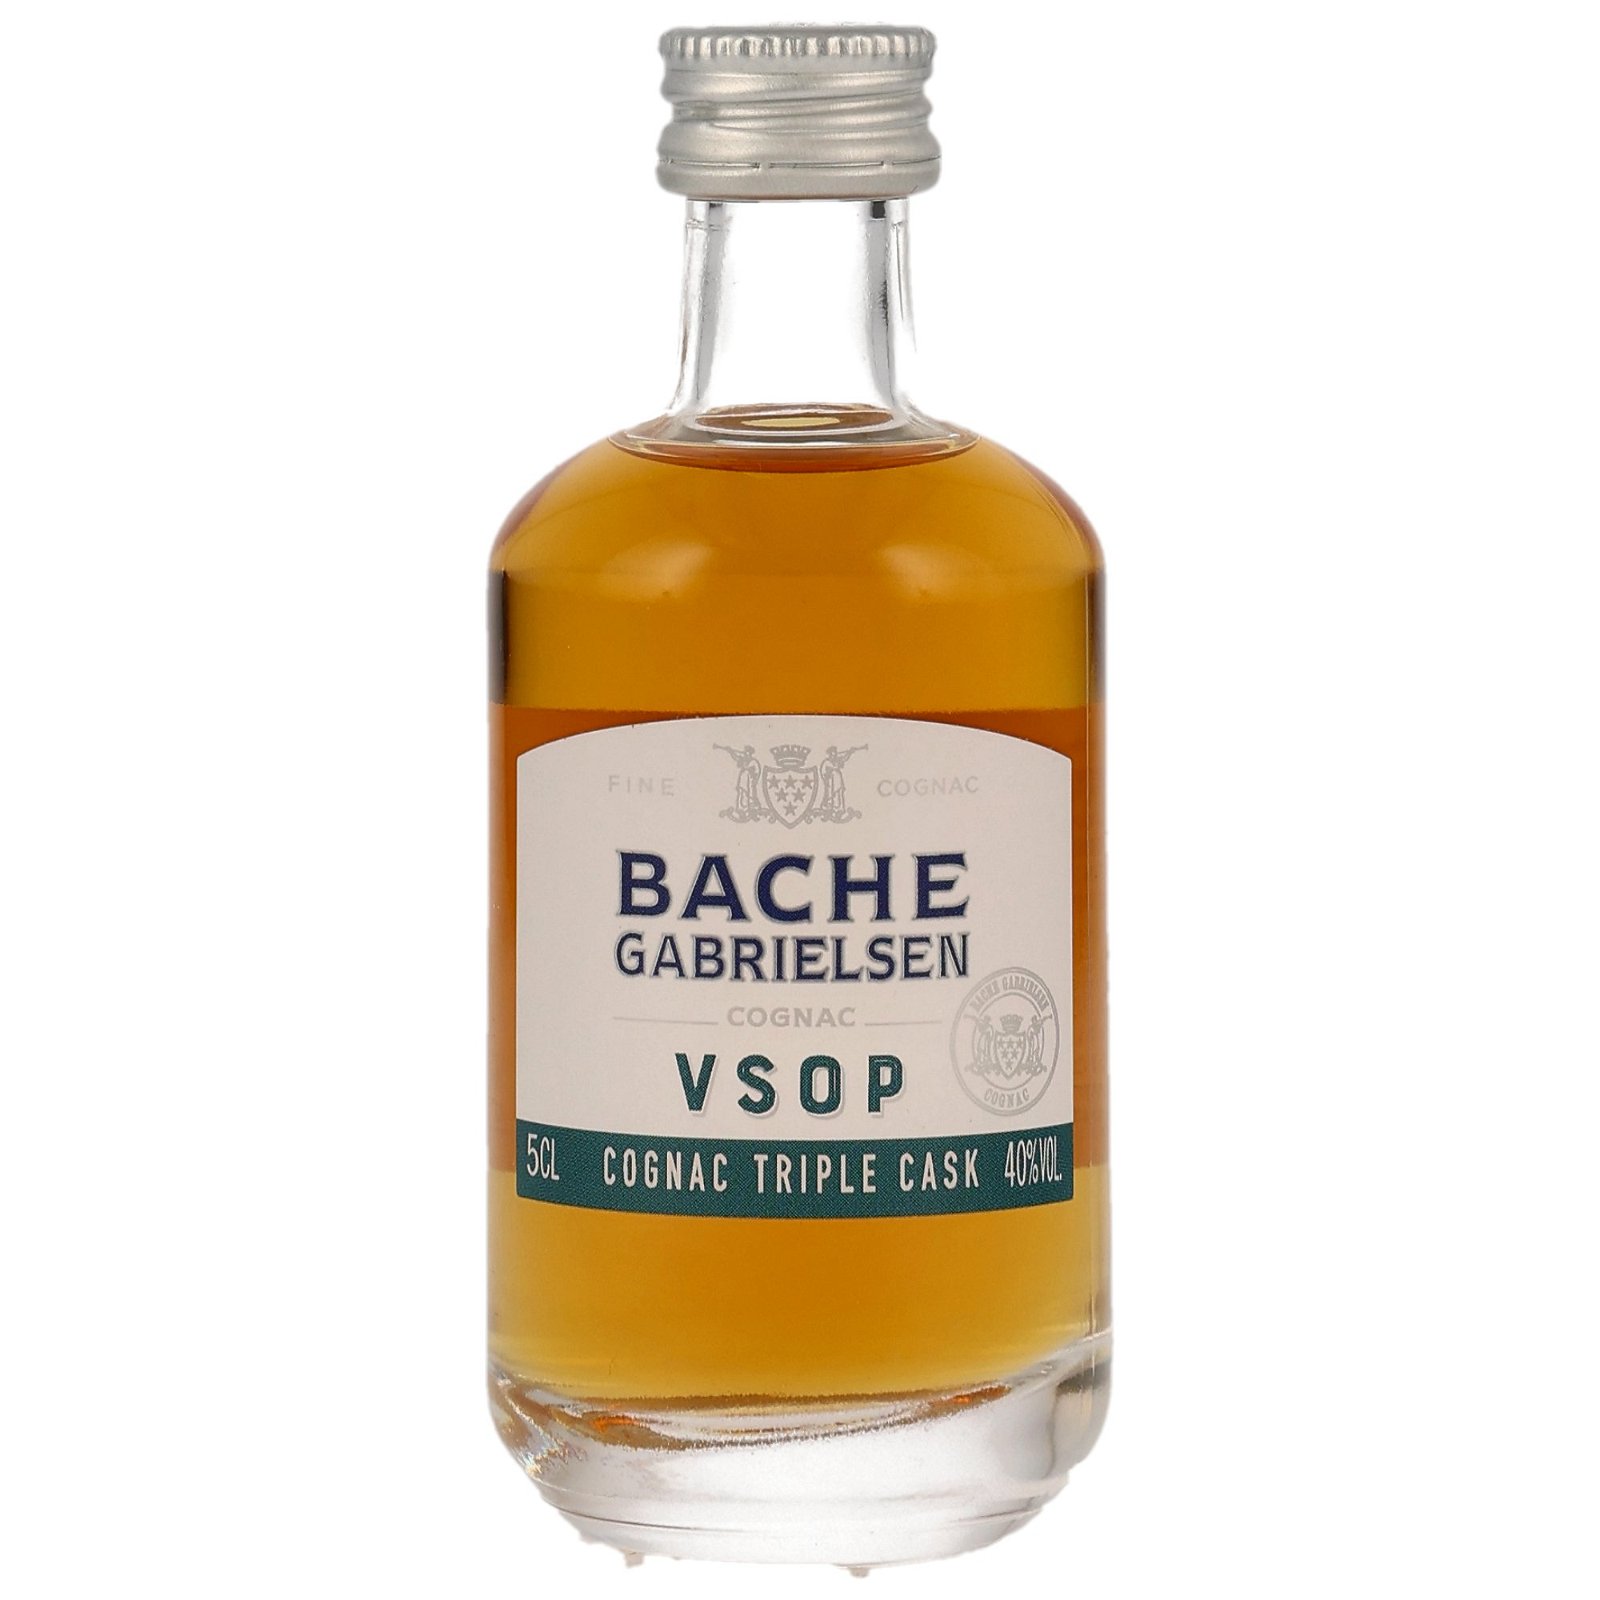 Bache-Gabrielsen VSOP Cognac Triple Cask Edition (5cl Miniatur)